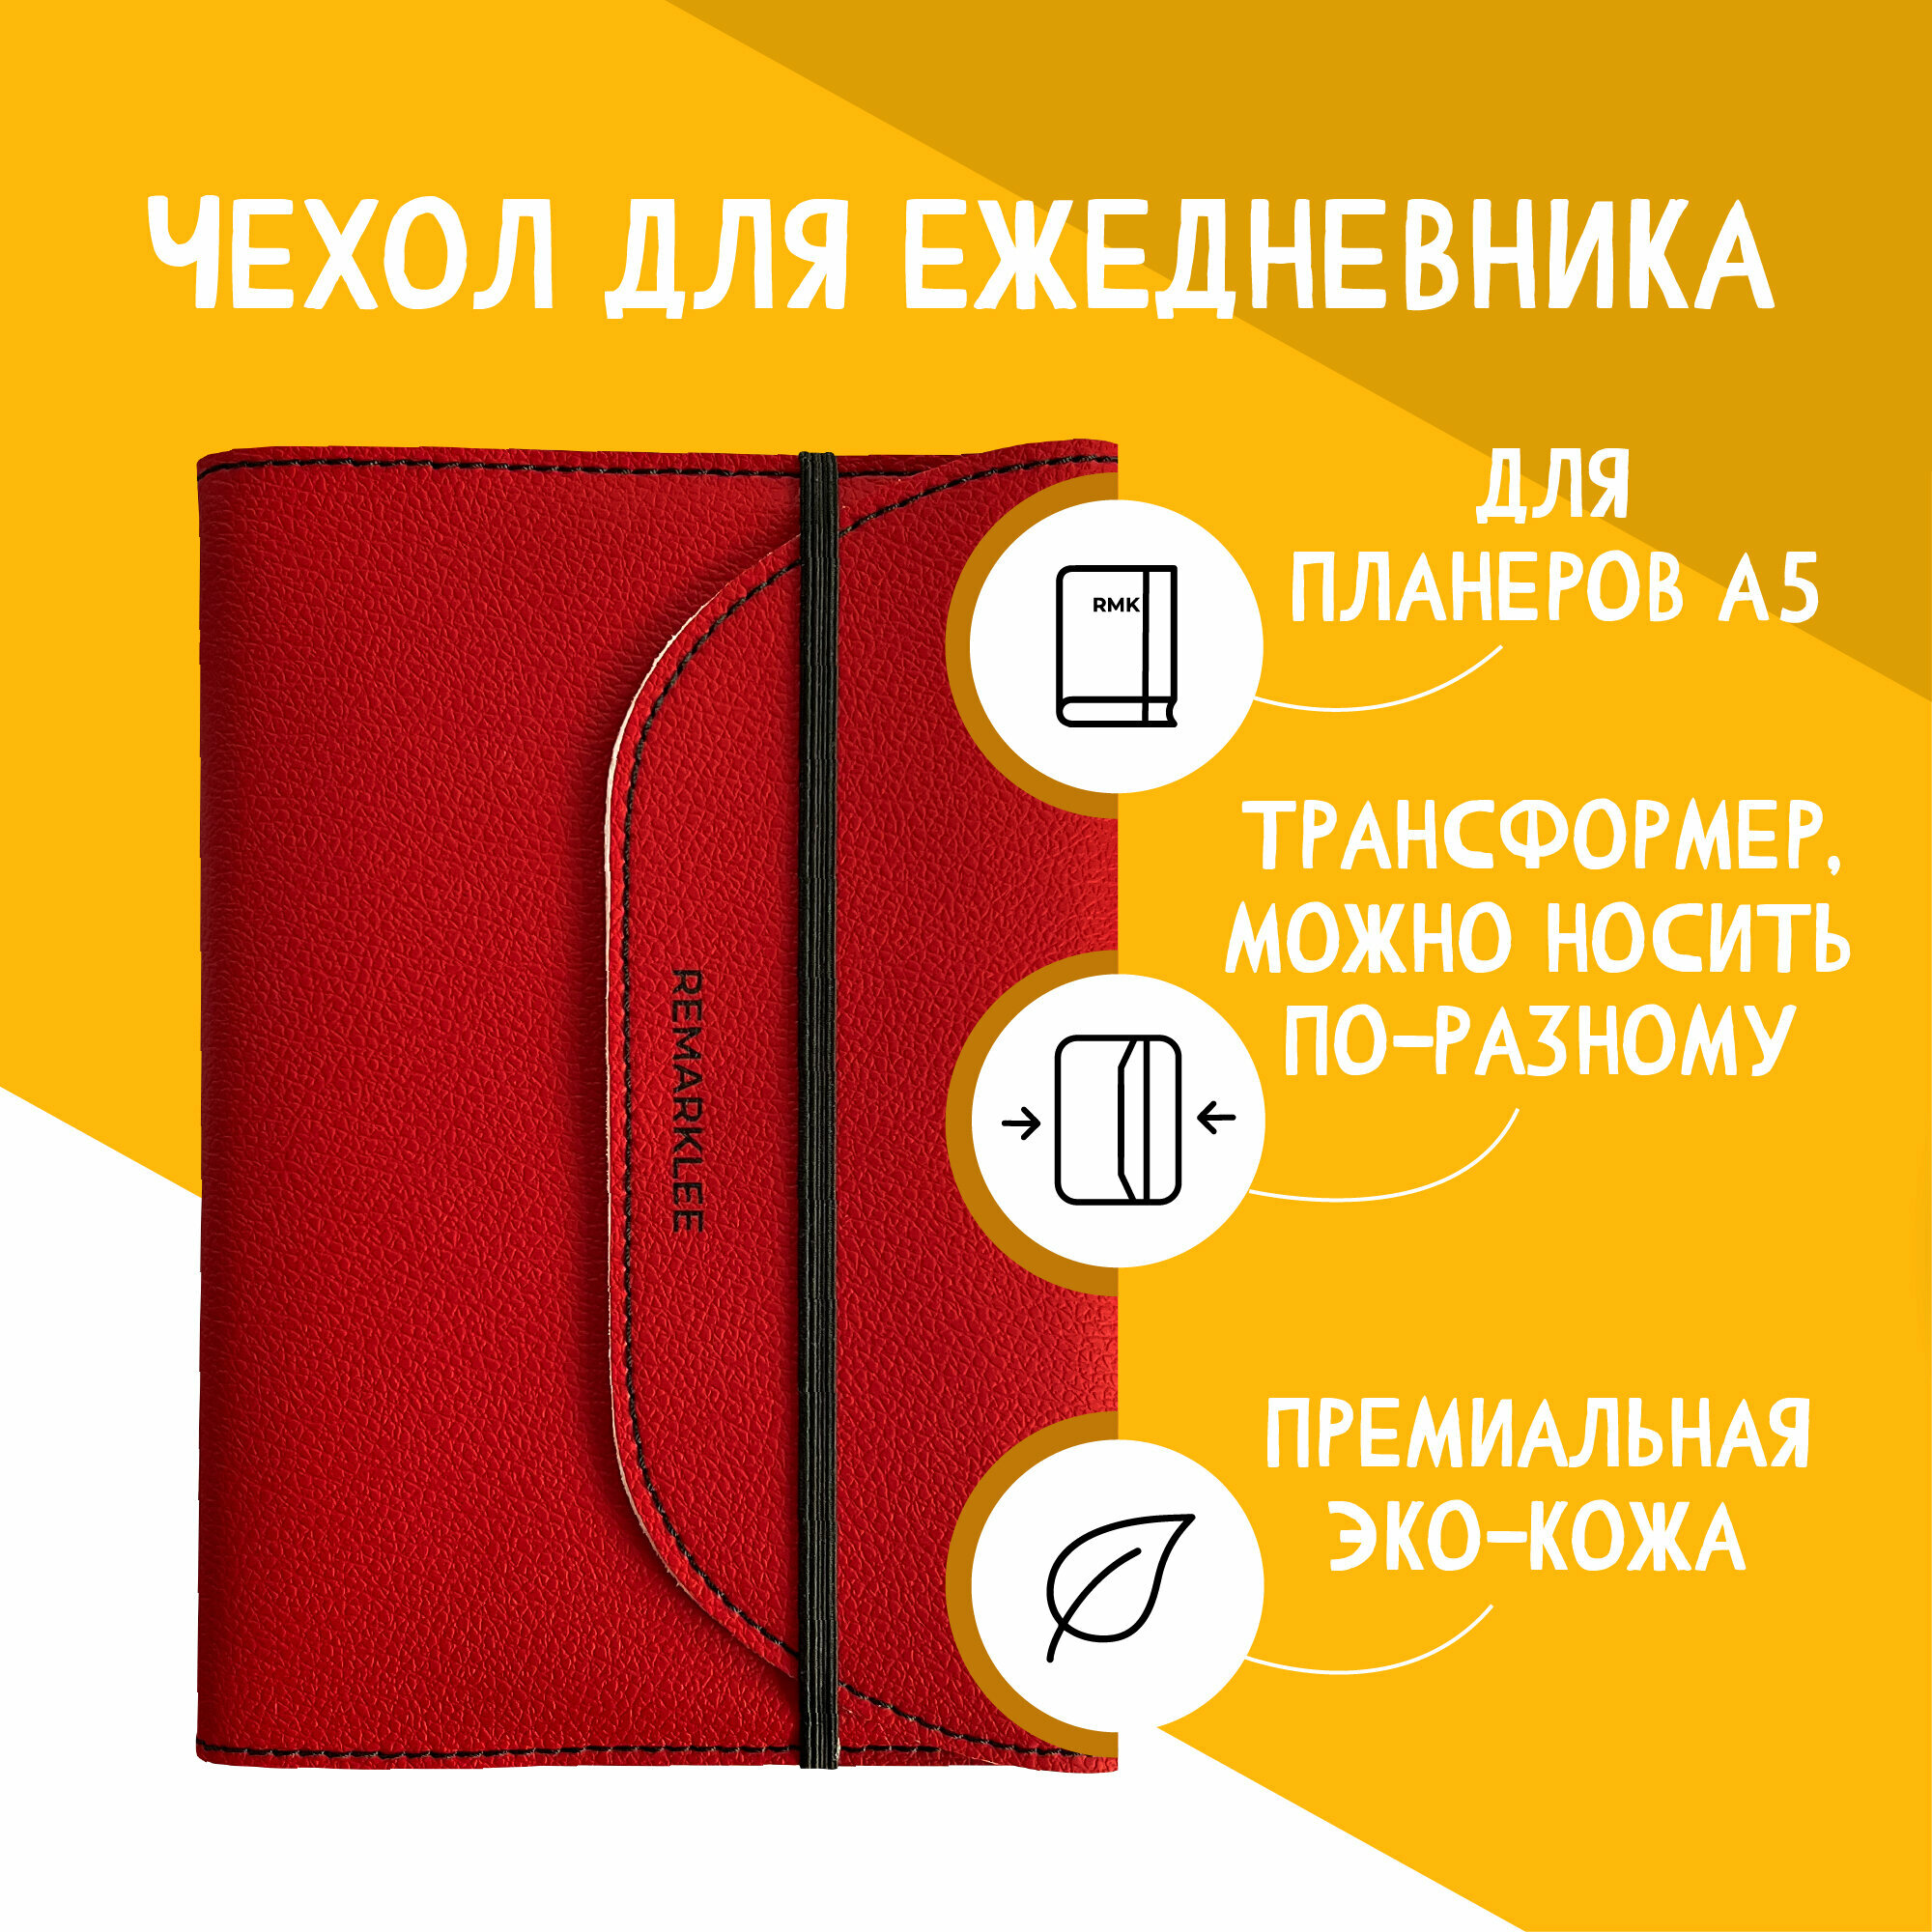 Обложка Remarklee "Красная" универсальная из экокожи для планера, блокнота, ежедневника, книги А5